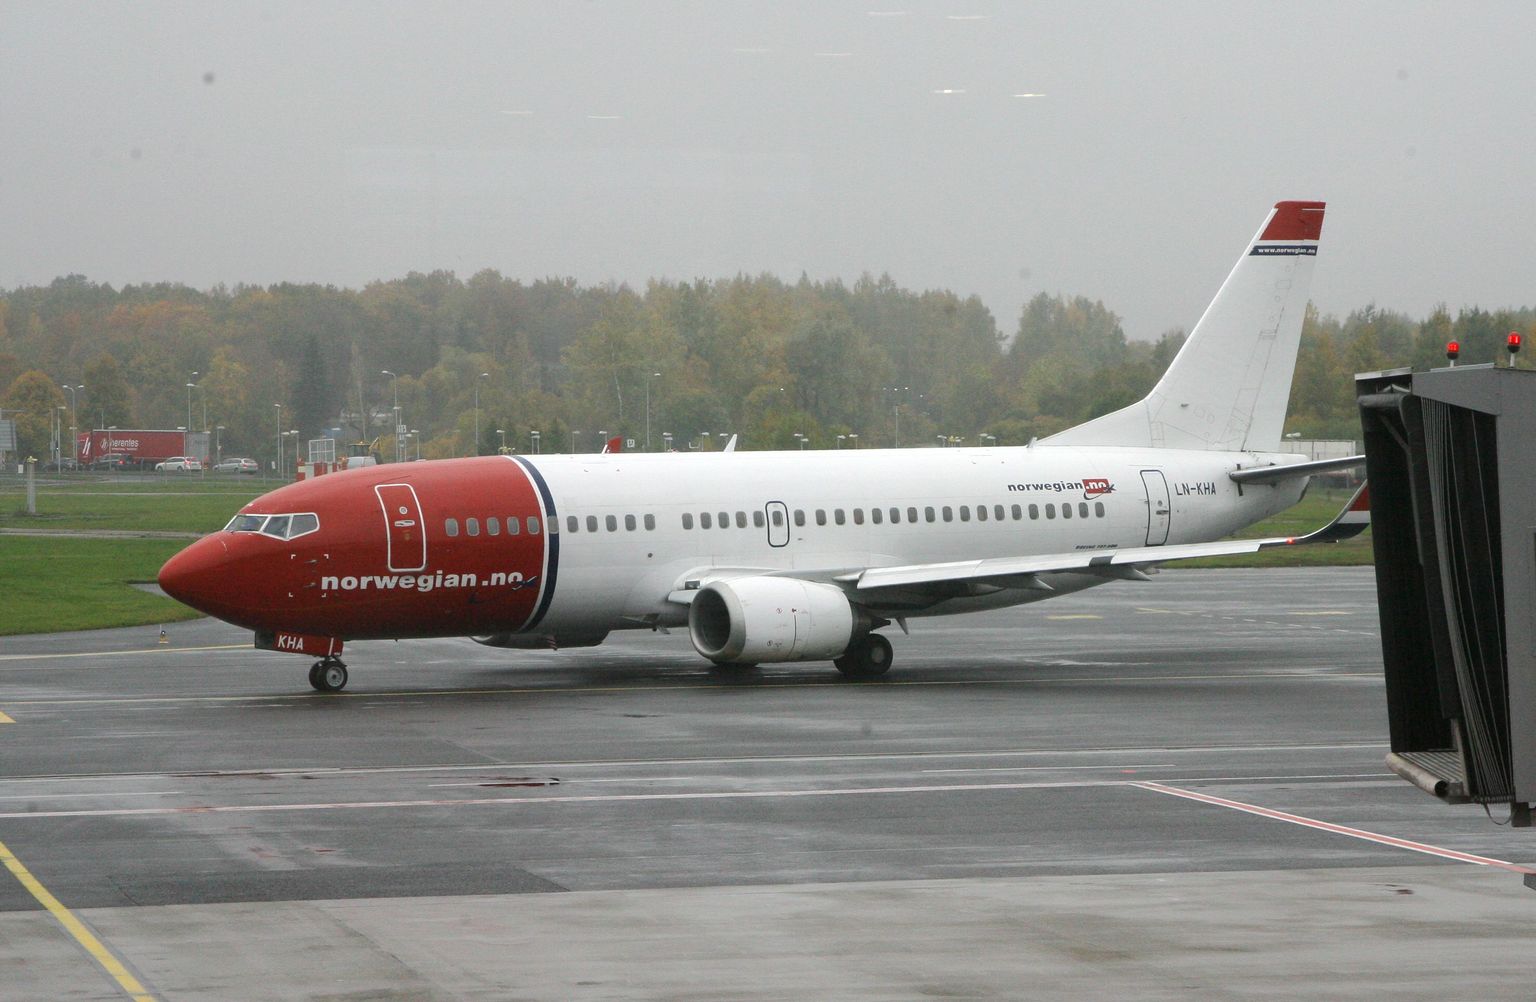 Norwegiani norra kliendid maksavad märgatavalt vähem lennupiletite eest kui välismaalased.